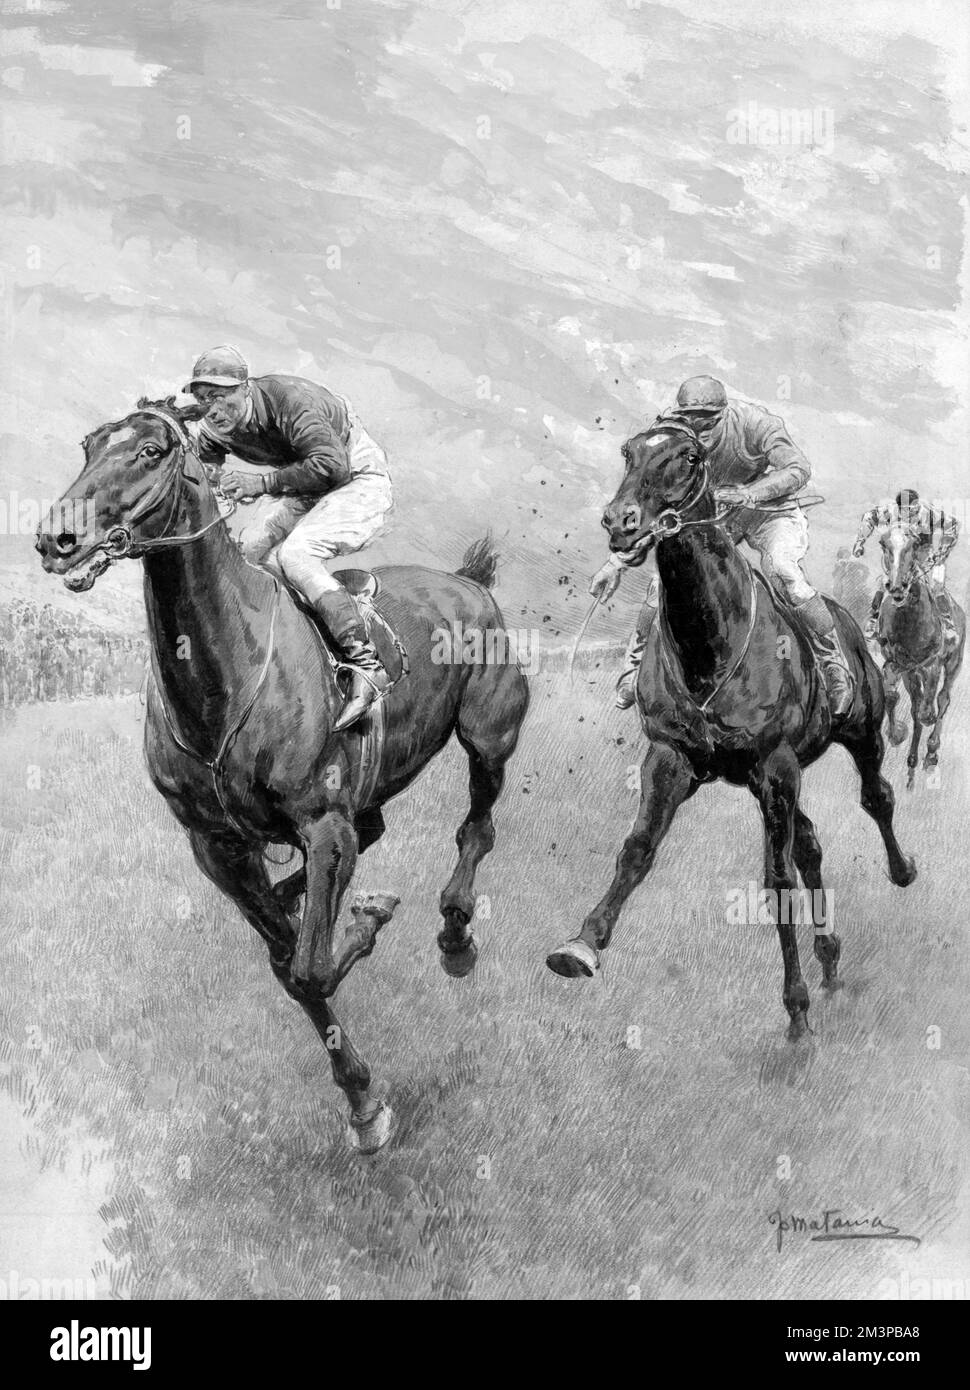 Dessin encadré de la course de Derby montrant trois chevaux en mouvement -- Grand Parade gagnant le Derby de la victoire de Buchan,1919. Date: 1919 Banque D'Images